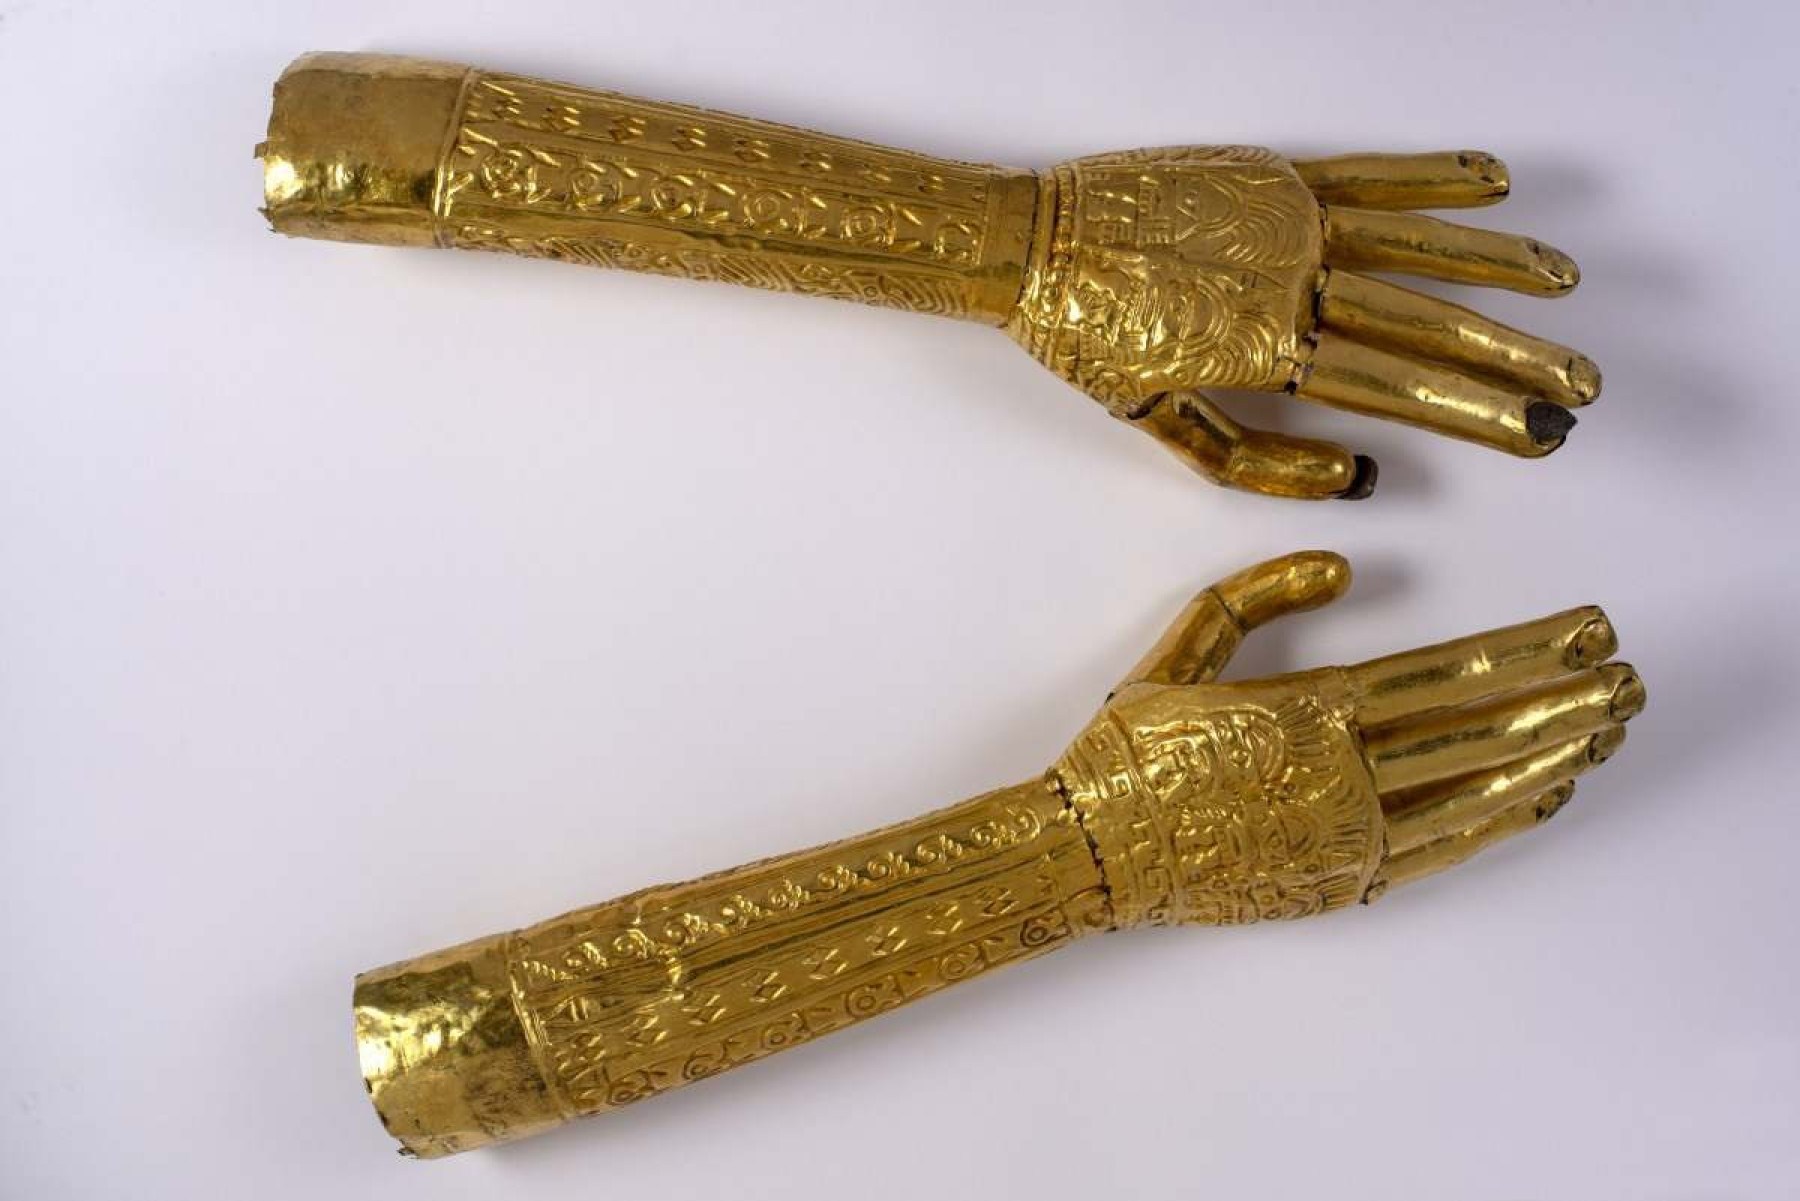 Luva (mãos direita e esquerda) Dourada.  Cultura Lambayeque, Costa Norte do Peru 900-1450 dC